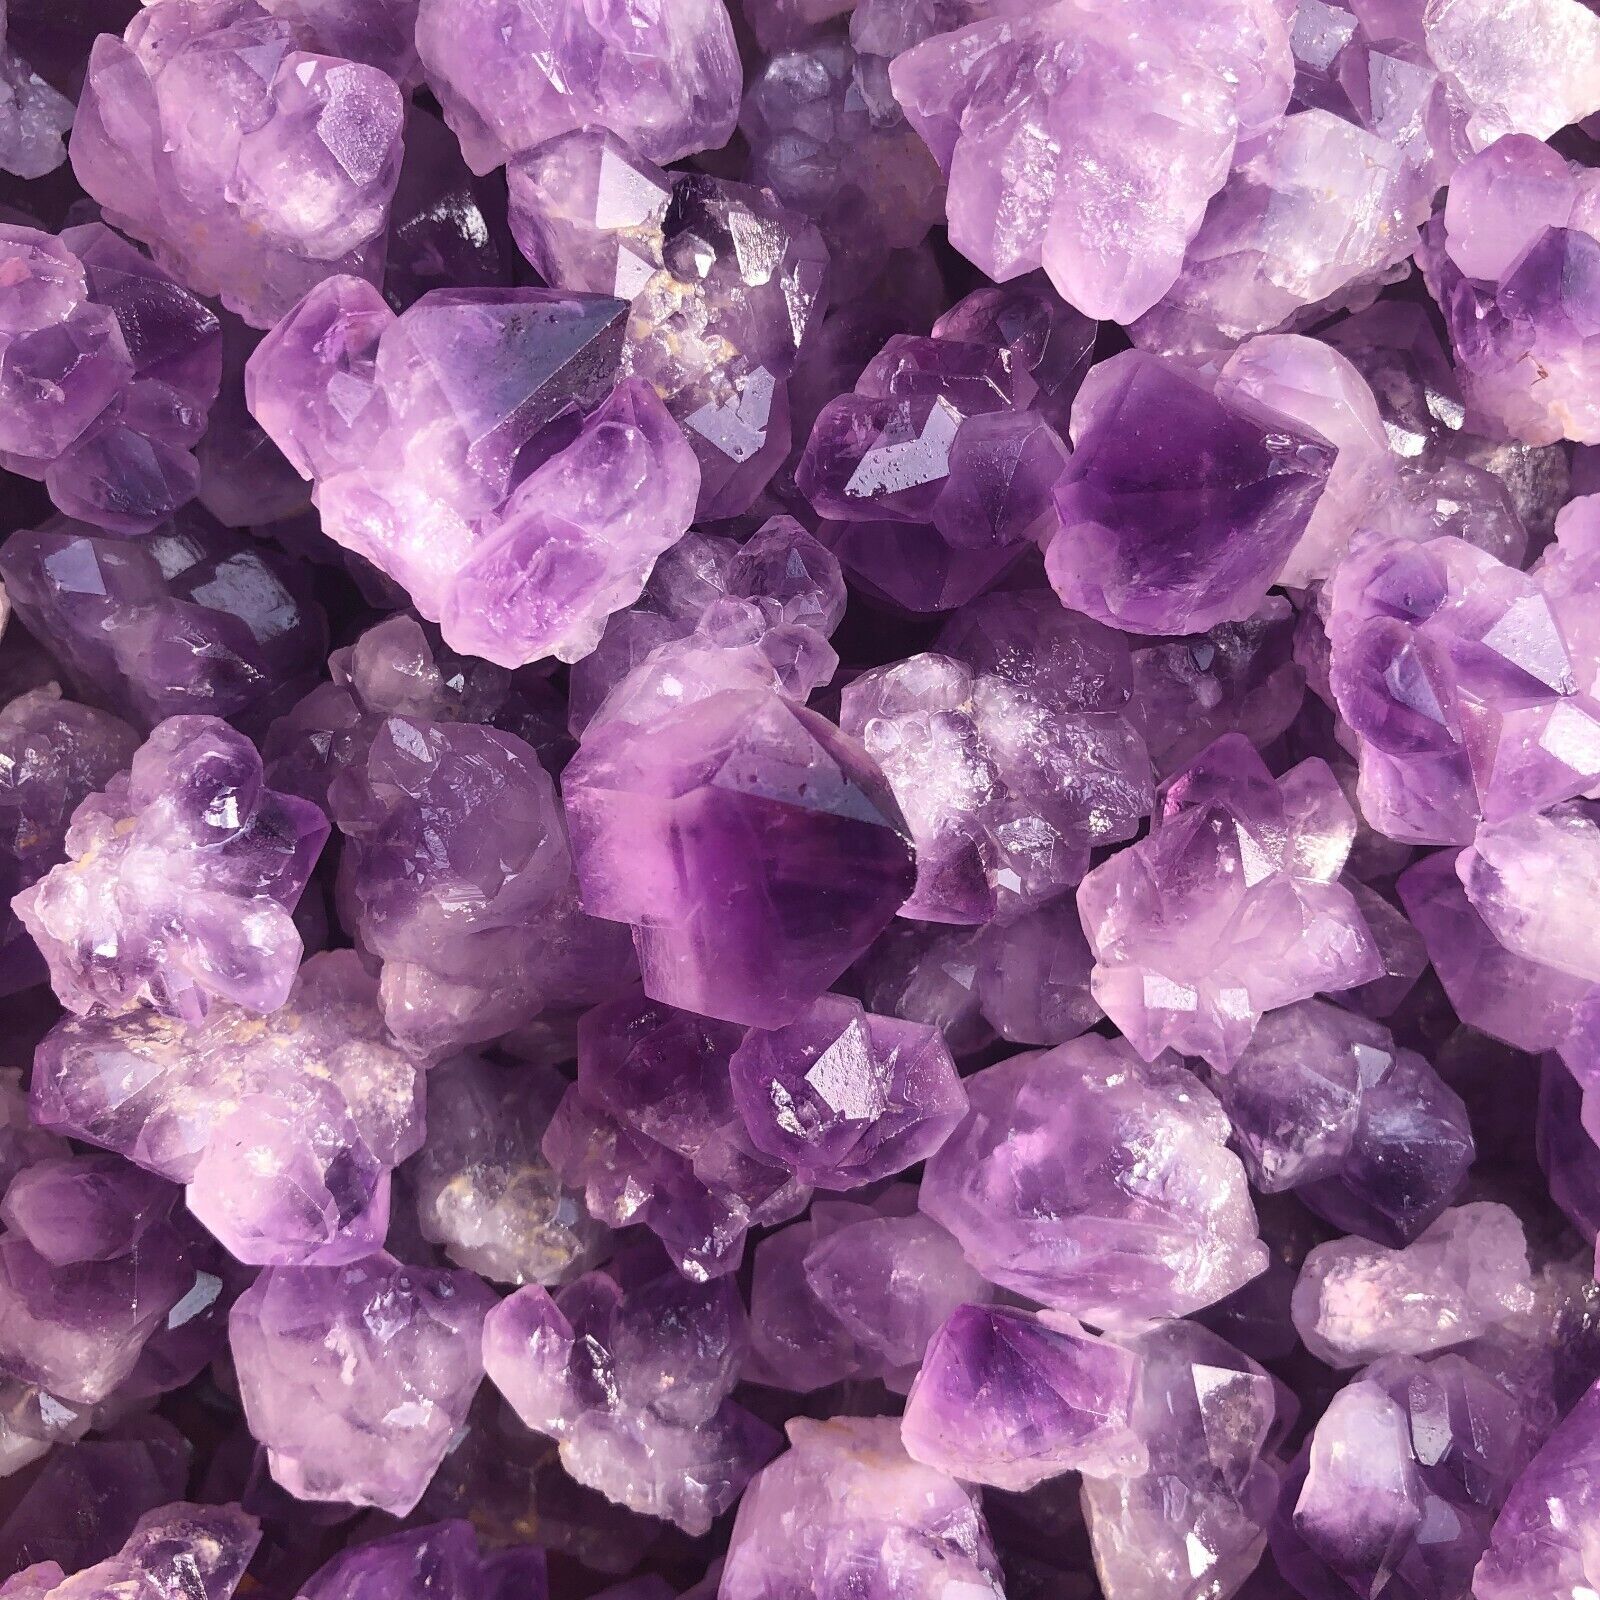 1000g Natural Amethyst flower geode quartz cluster crystal specimen Healing 